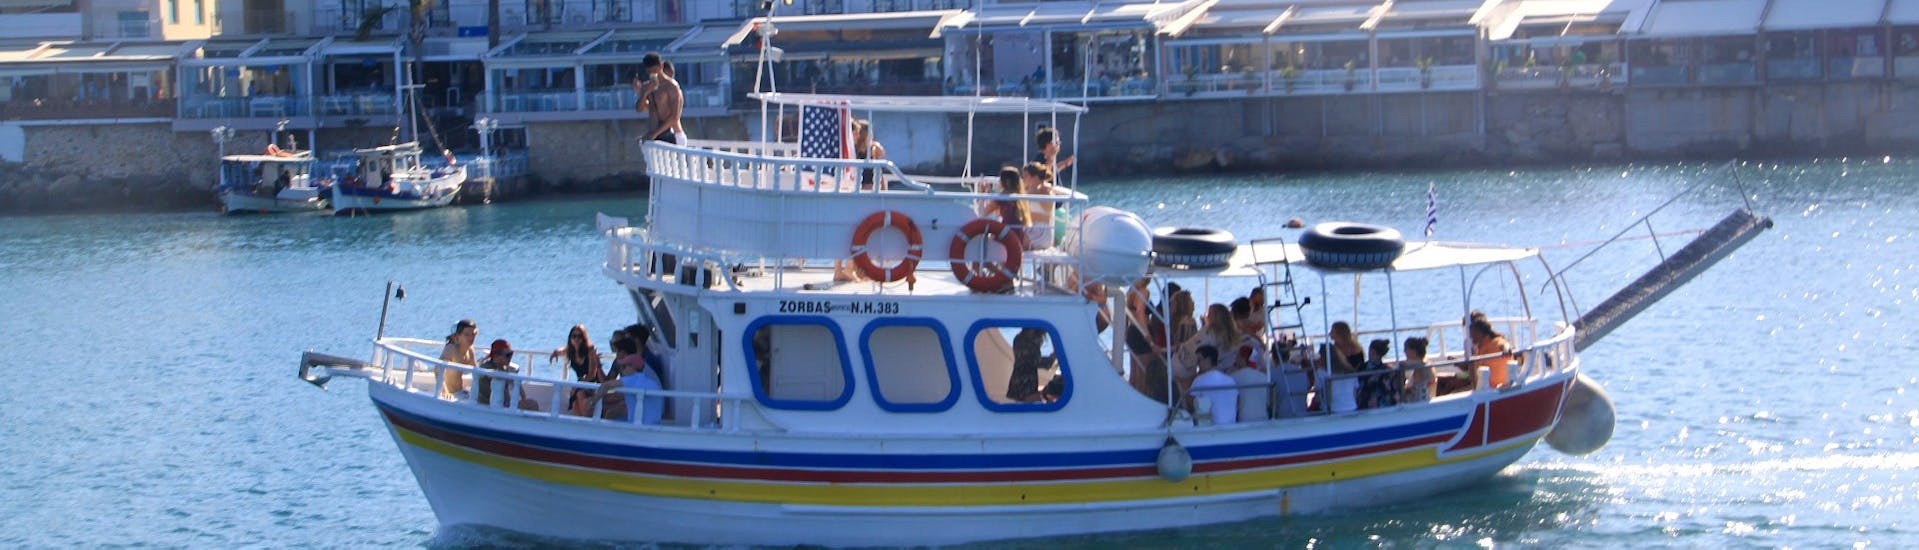 De boot vaart met alle deelnemers aan boord tijdens de Boottocht langs de kustlijn naar Saint George's Bay